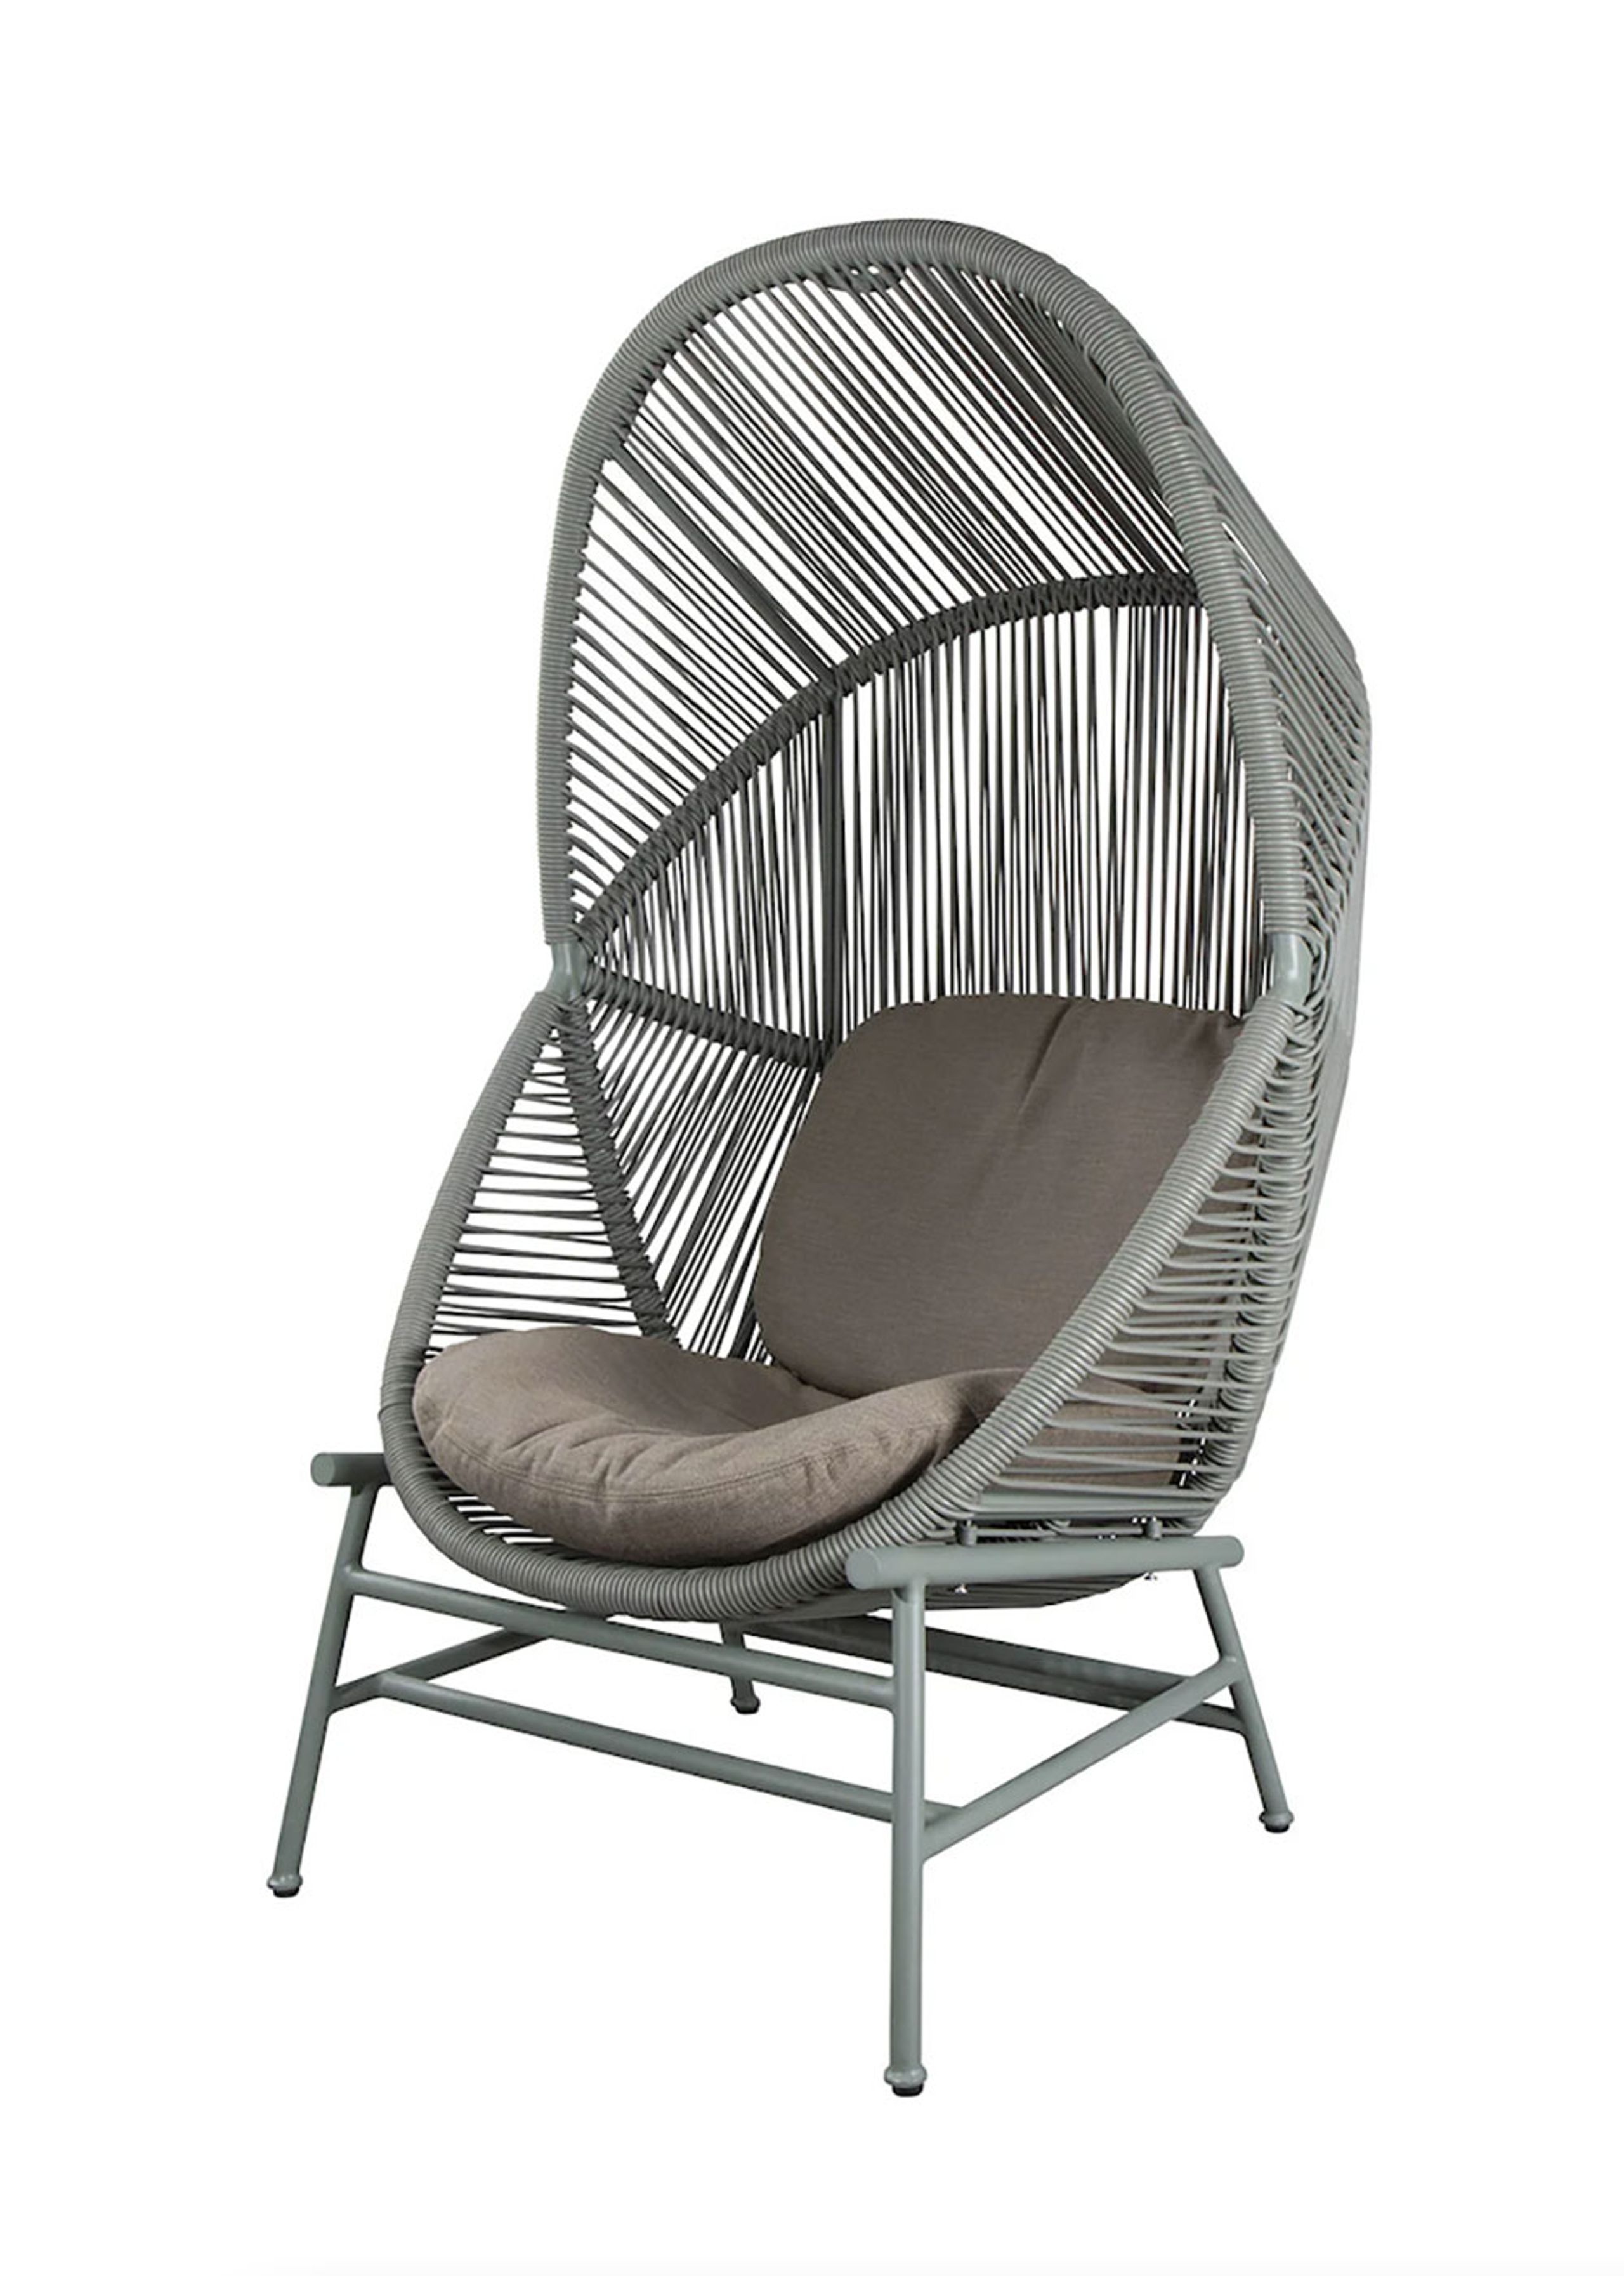 Refrein hoffelijkheid tempo Hive Hanging Chair - Hangende stoel - Cane-line